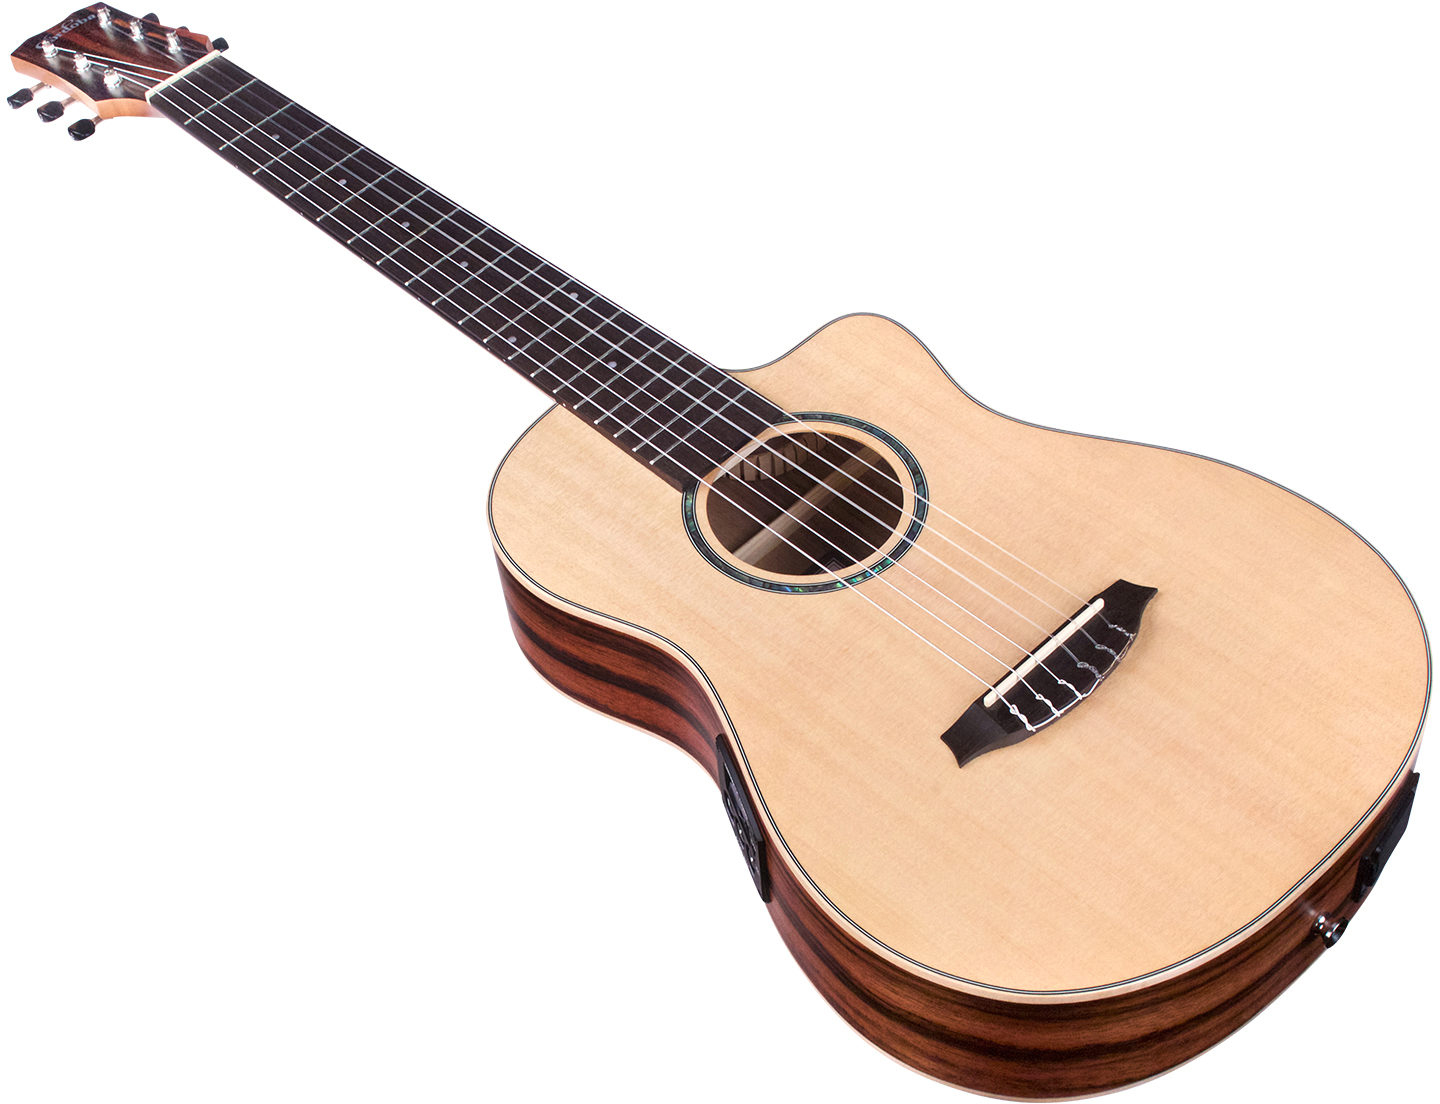 Cordoba Mini Ii Eb-ce Epicea Ebene Pf - Natural - Classical guitar 1/2 size - Variation 2